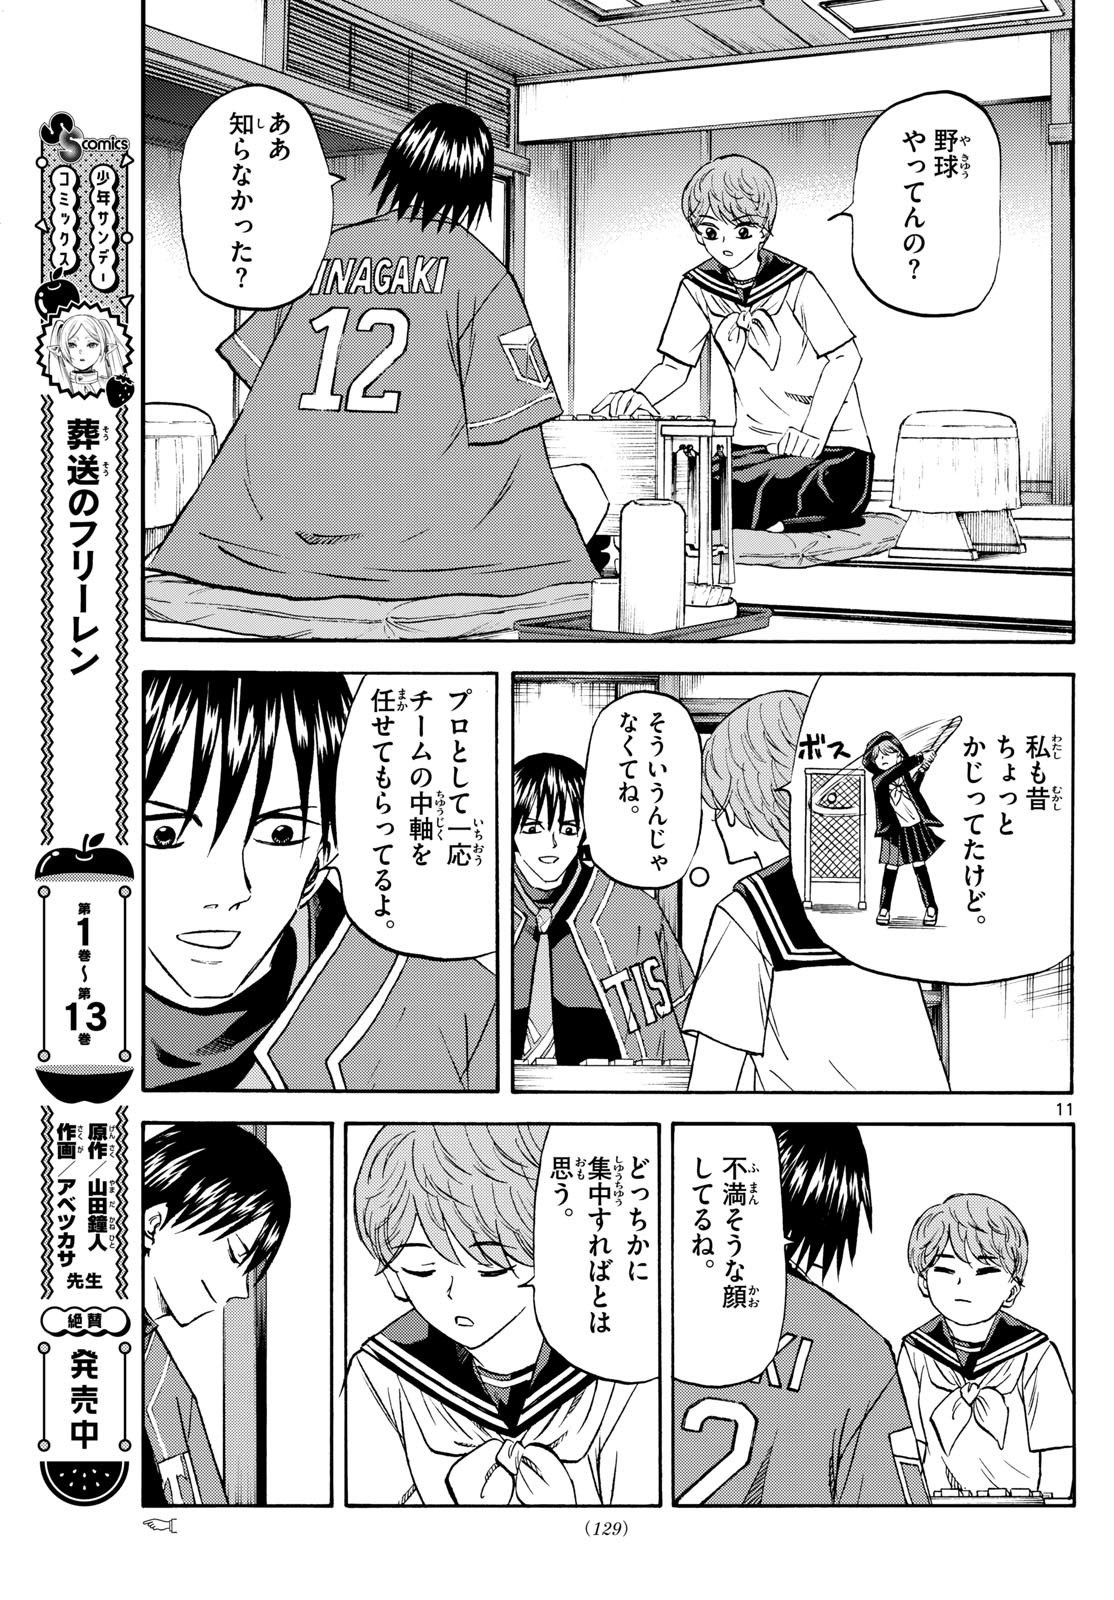 Tatsu to Ichigo - Chapter 197 - Page 11